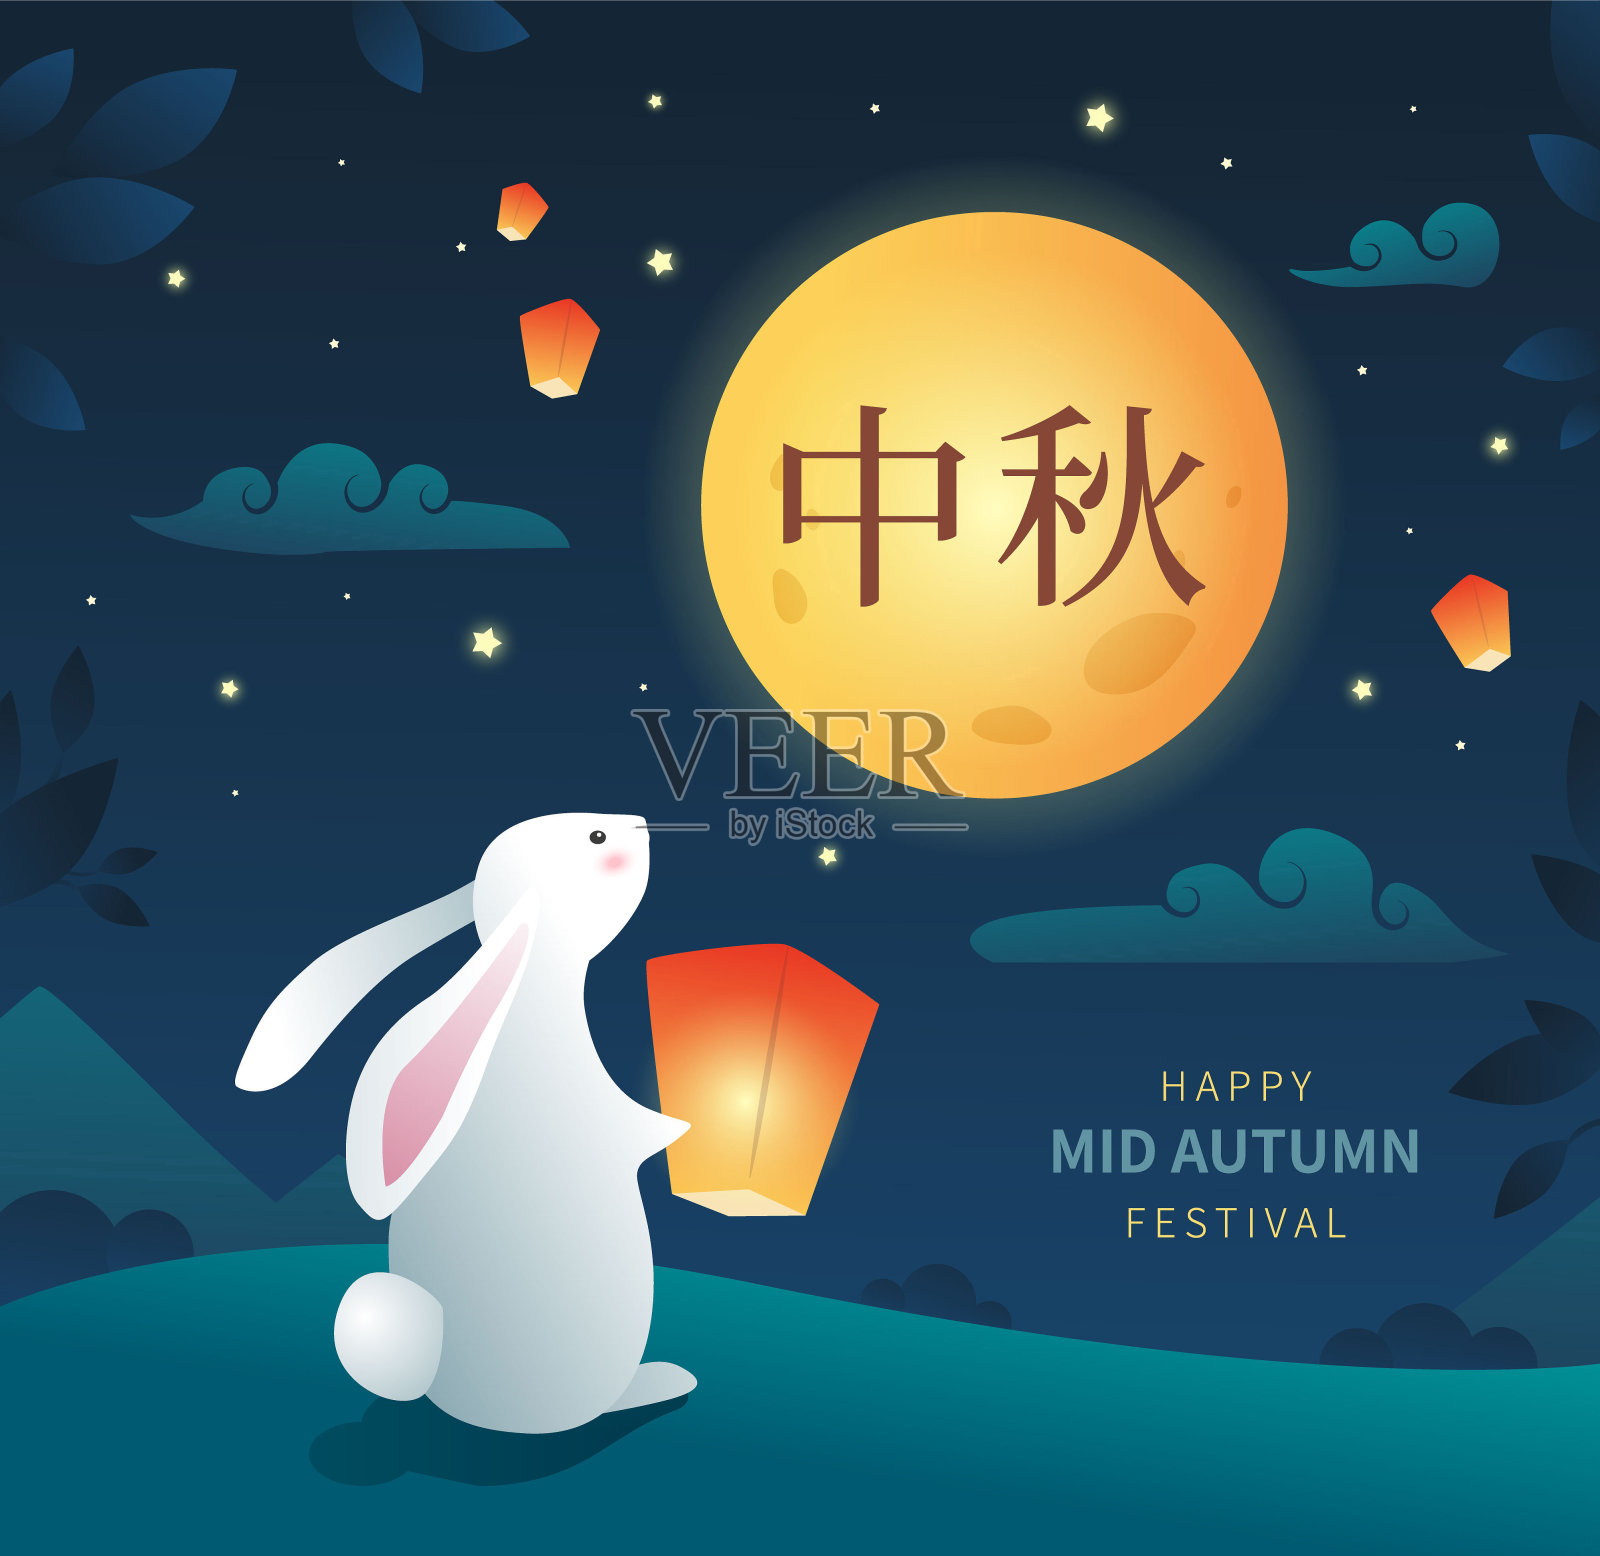 可爱的中秋贺卡或横幅插图。在中国的中秋节庆祝活动中，兔子和天灯看着满月。——矢量设计模板素材